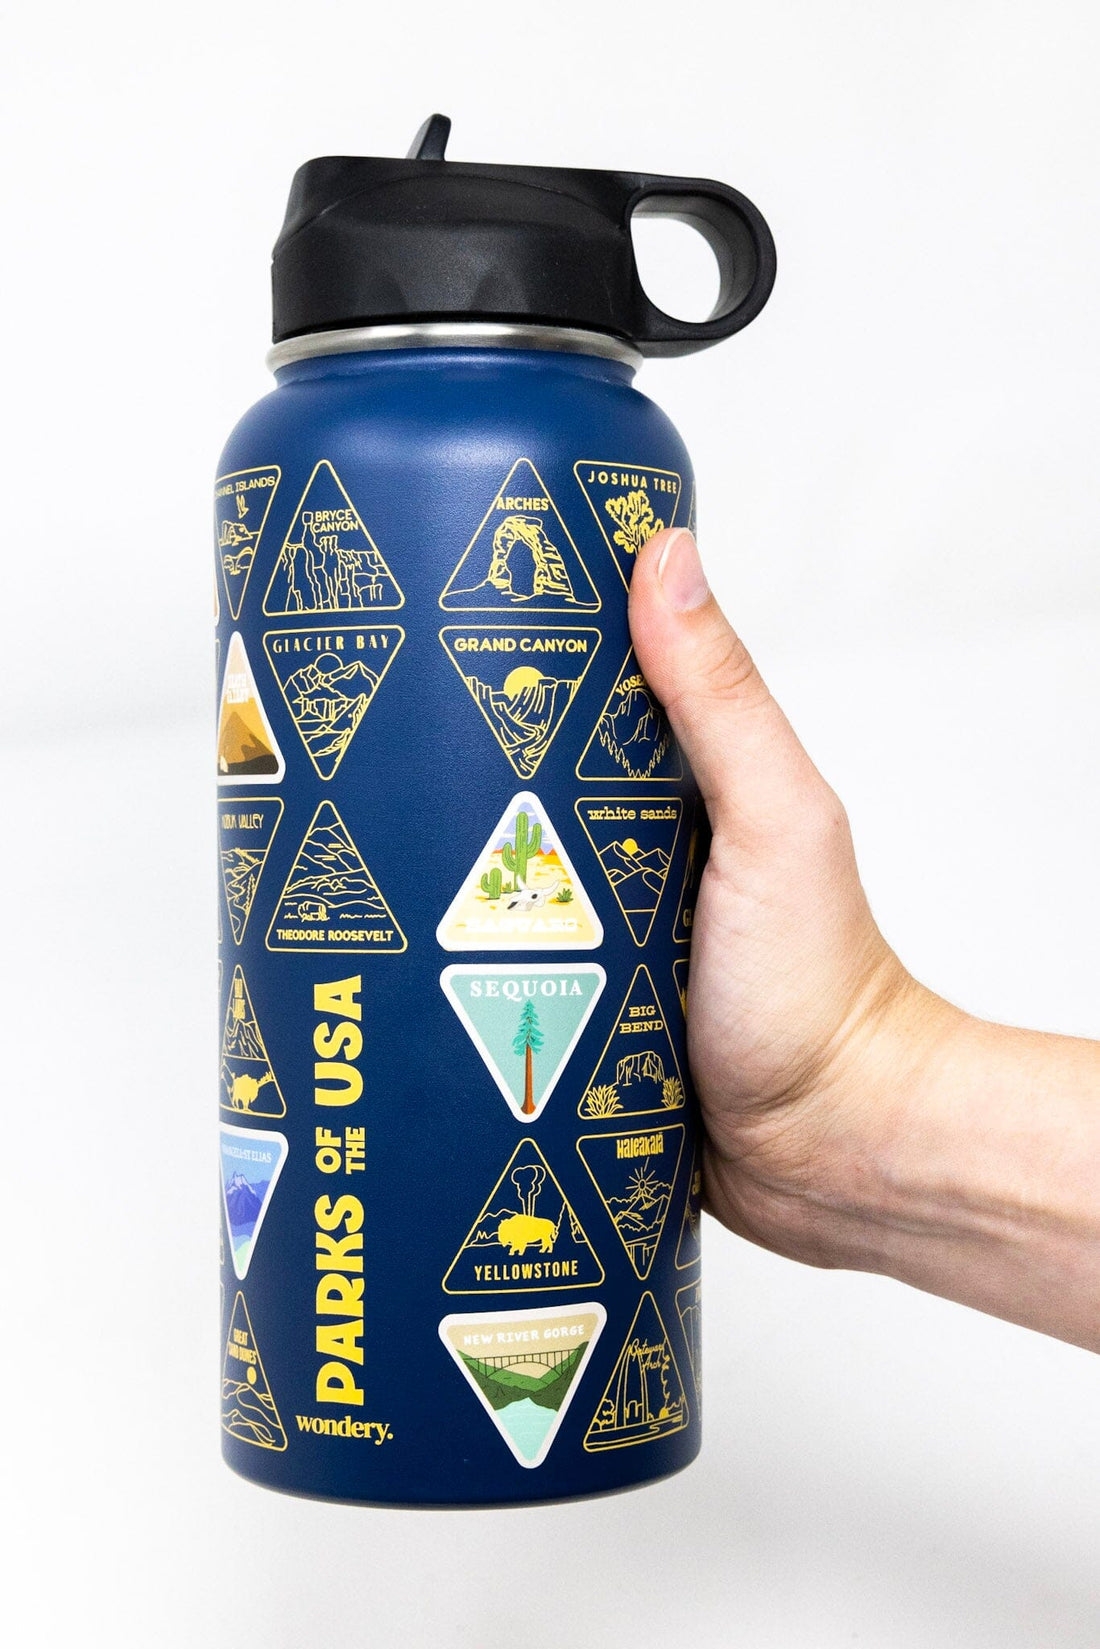 USA national parks souvenir lightweight travel water bottle